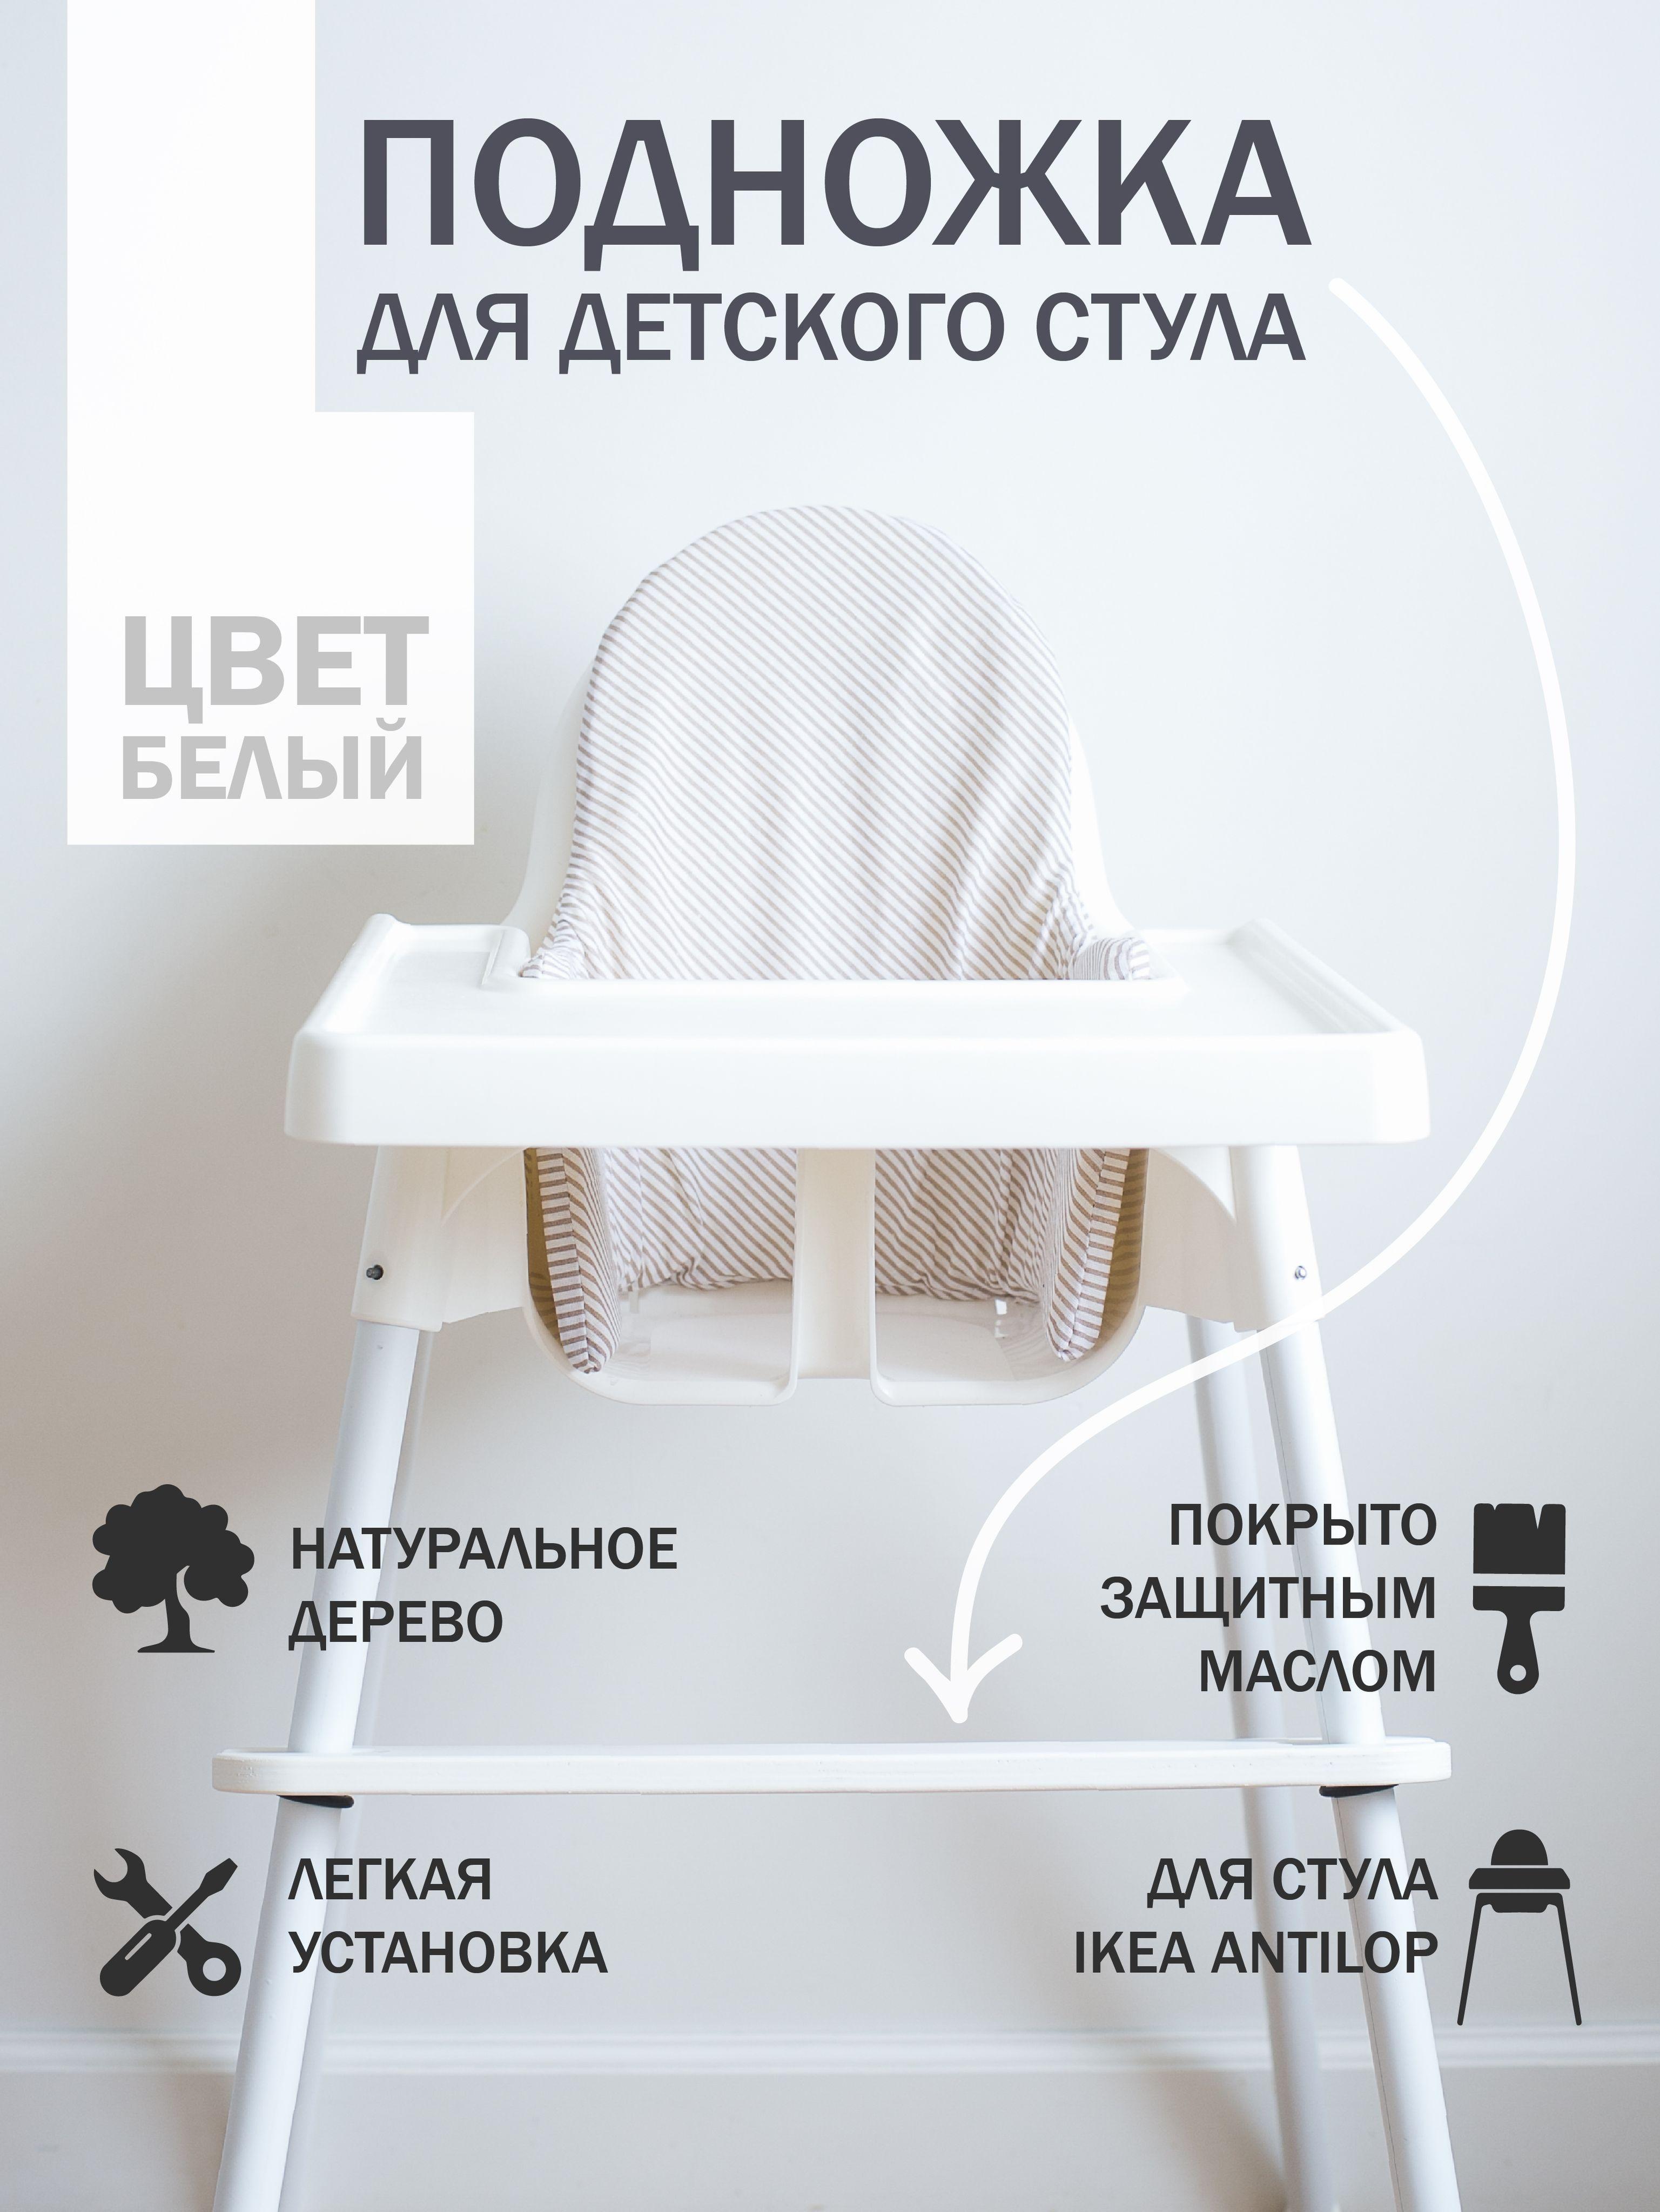 Подножка для детского стульчика IKEA